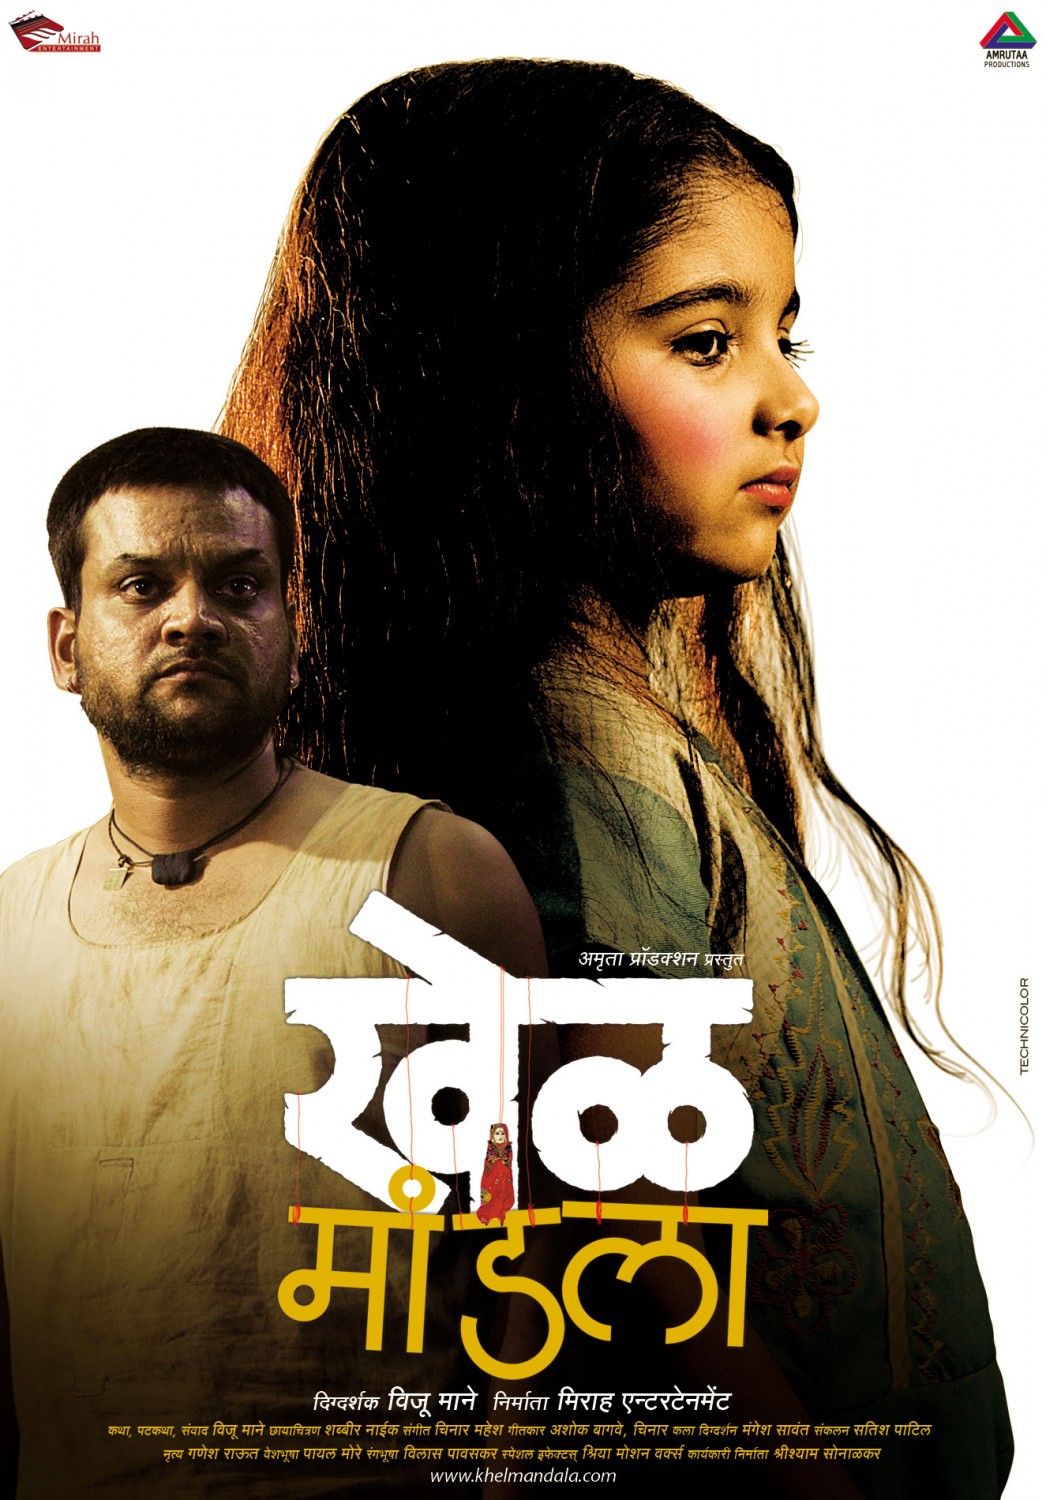 Extra Large Movie Poster Image for Khel Mandala (#4 of 13)